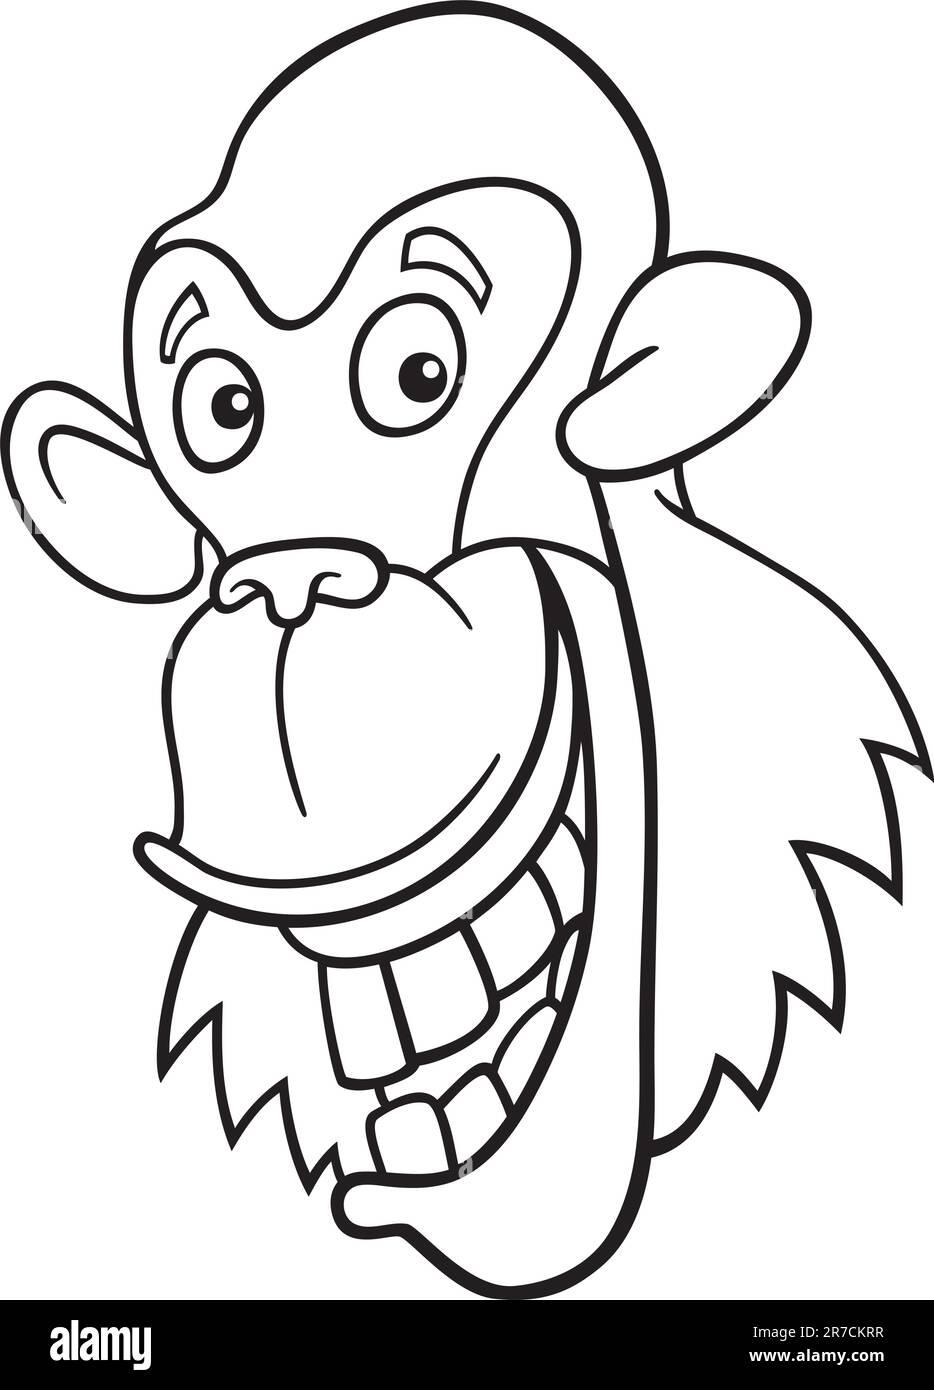 Cartoon illustration de drôle de singe chimpanzé Coloring Book Illustration de Vecteur